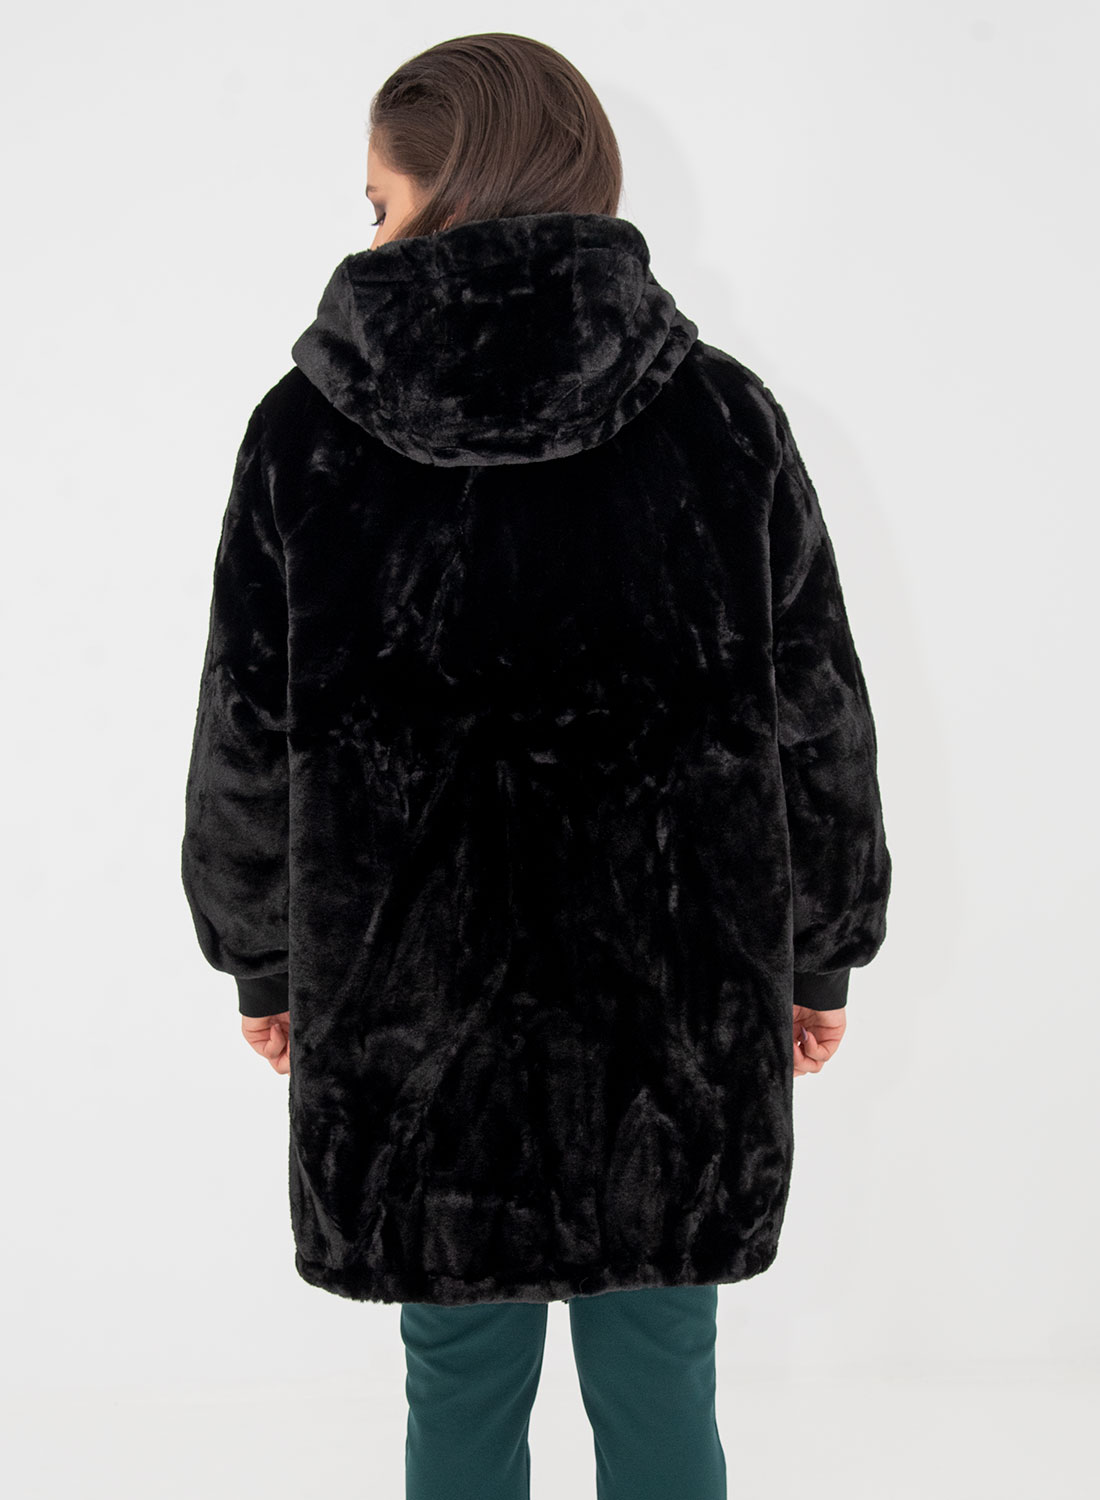 Μαύρο μπουφάν διπλής όψης με γούνα 